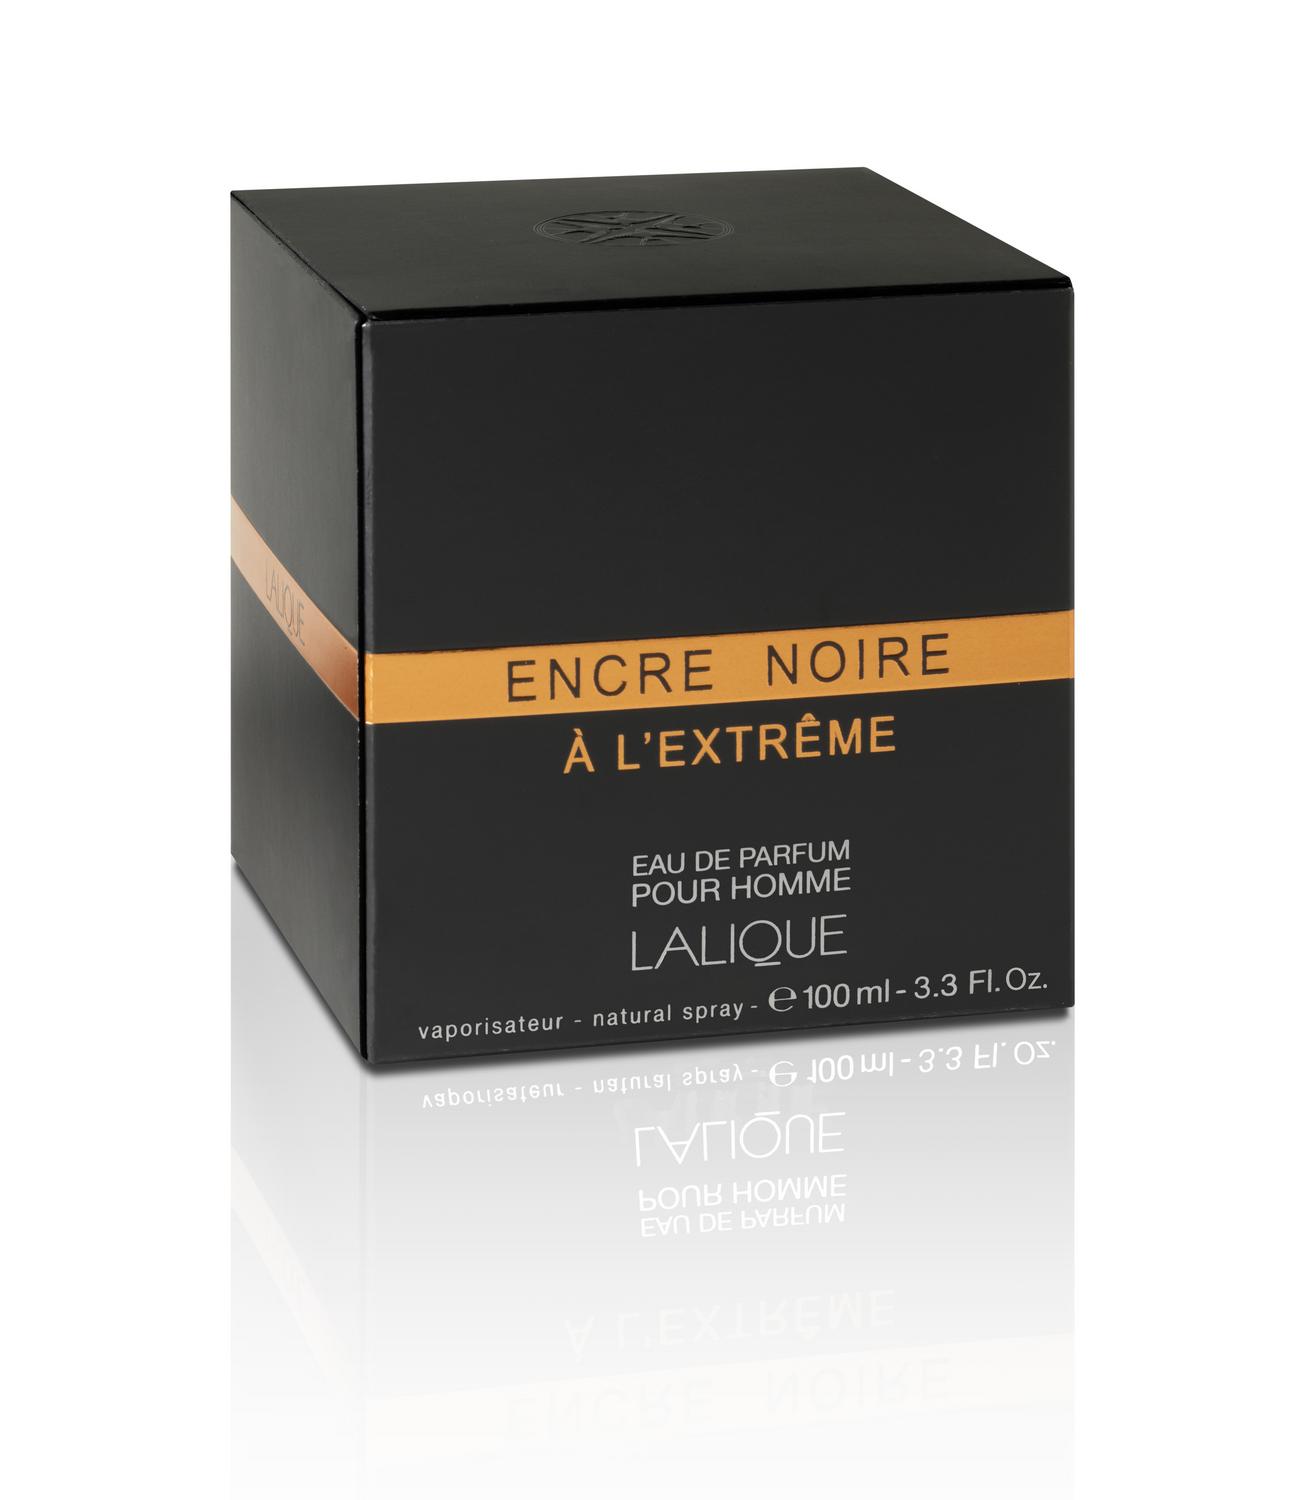 LALIQUE ENCRE NOIRE A L'EXTREME EDP 100ML - EASTERN SCENT